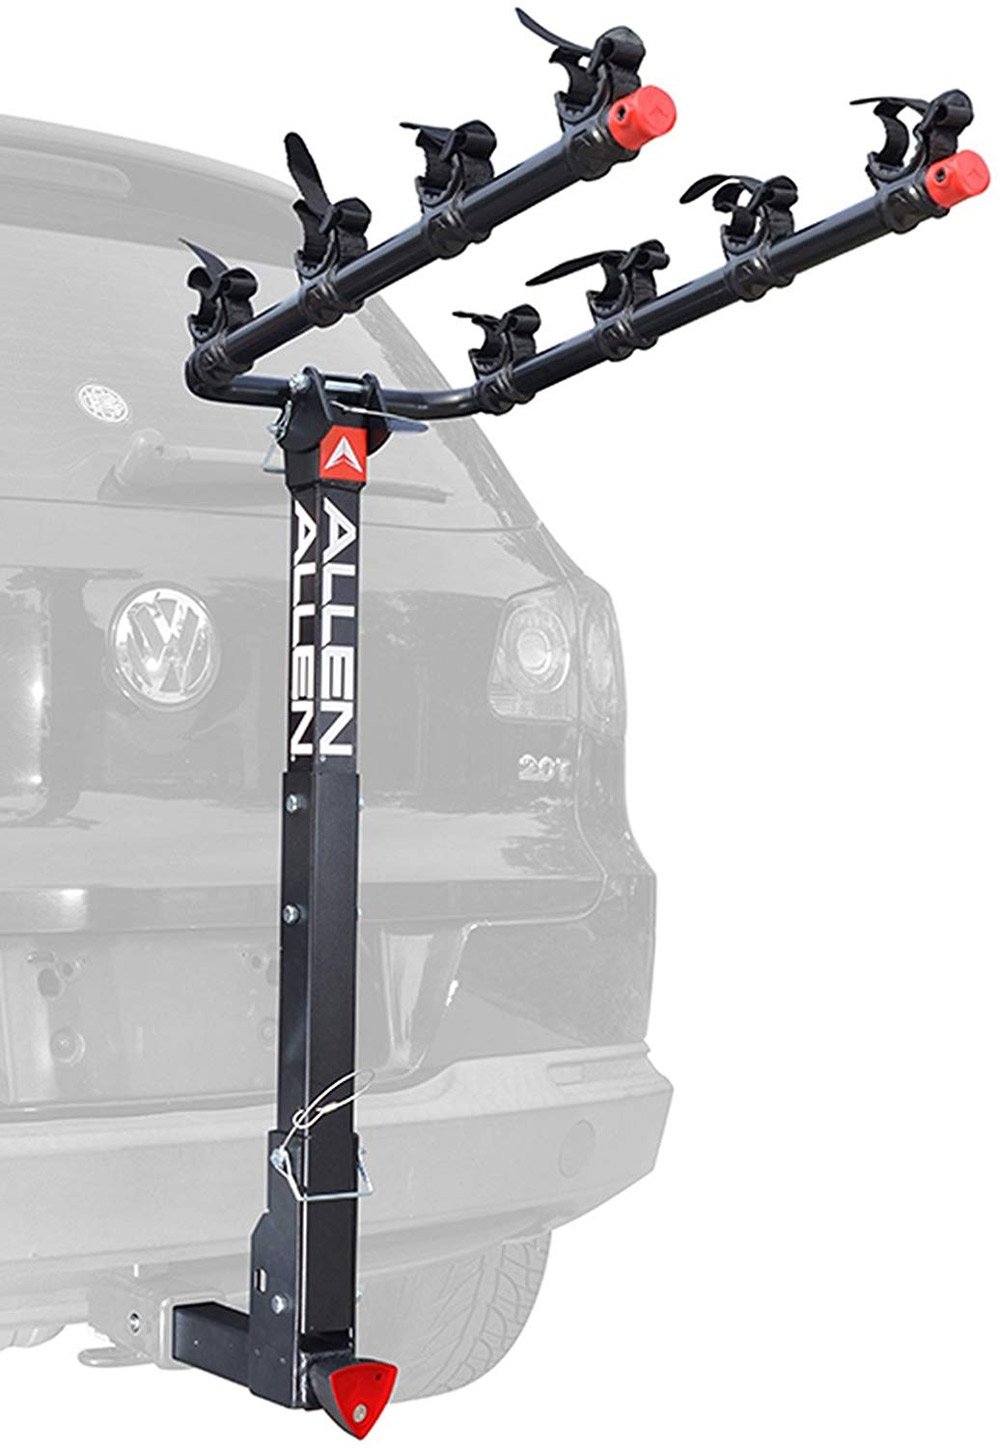 Rv Motorhome Bike Platform Rear Rack Carrier Fits 2" Receiver or Bumper Mount